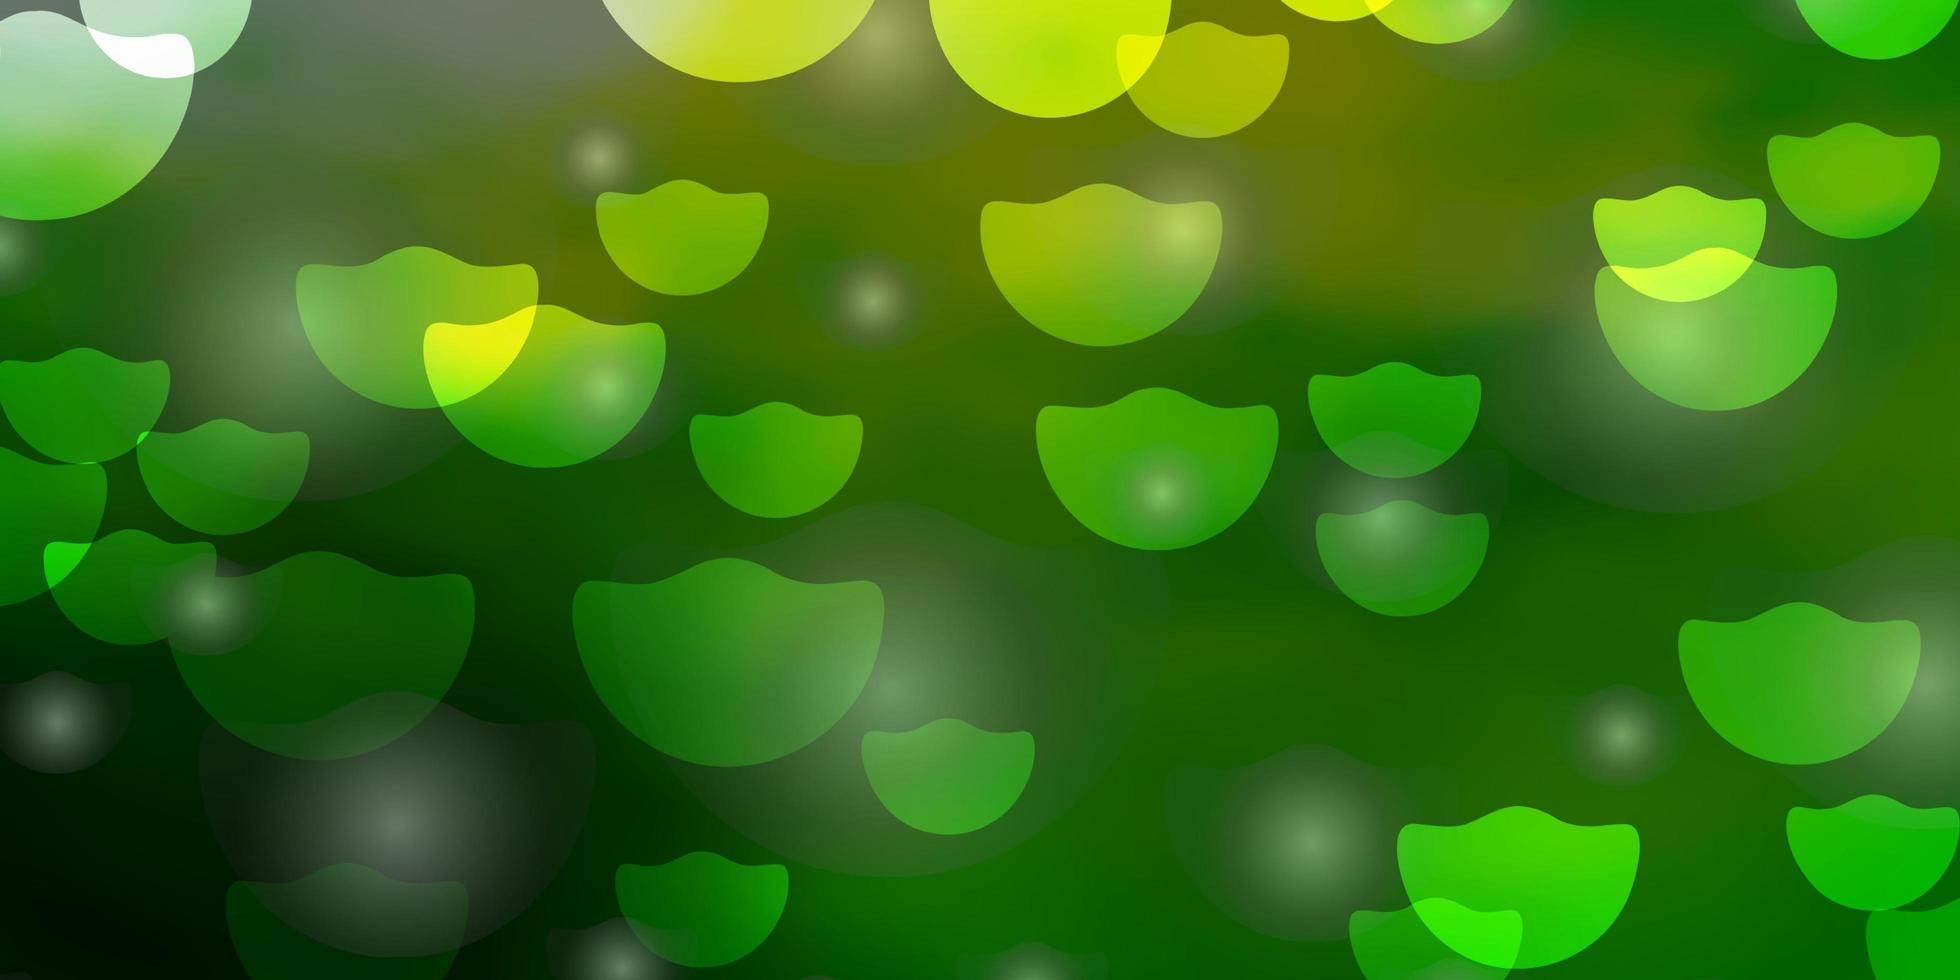 ljusgrön, gul bakgrund med cirklar vektor